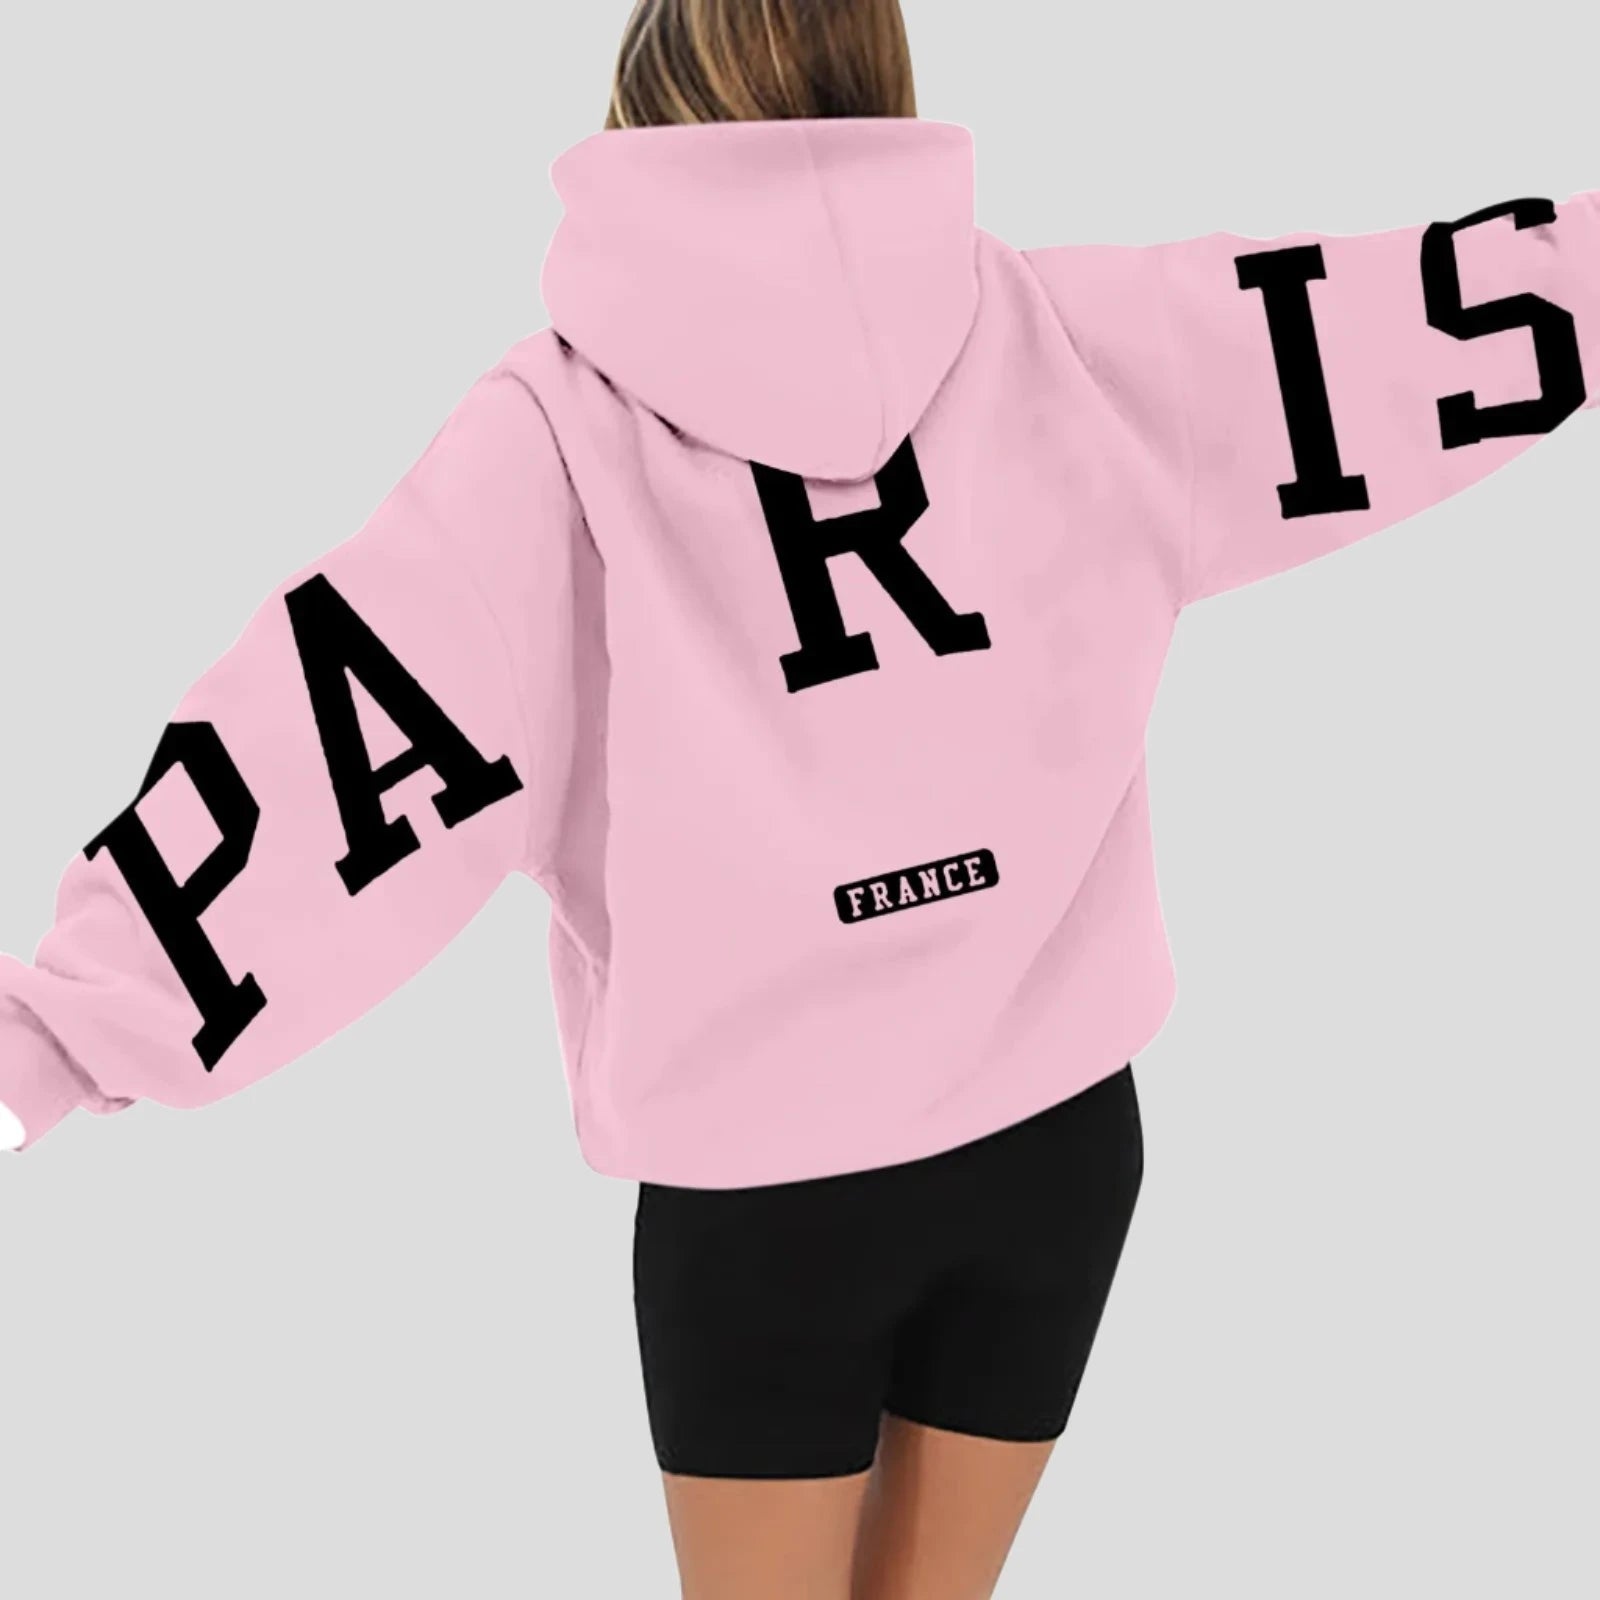 Paris France Printed Sweatshirt Hoodie for Women - true-deals-club